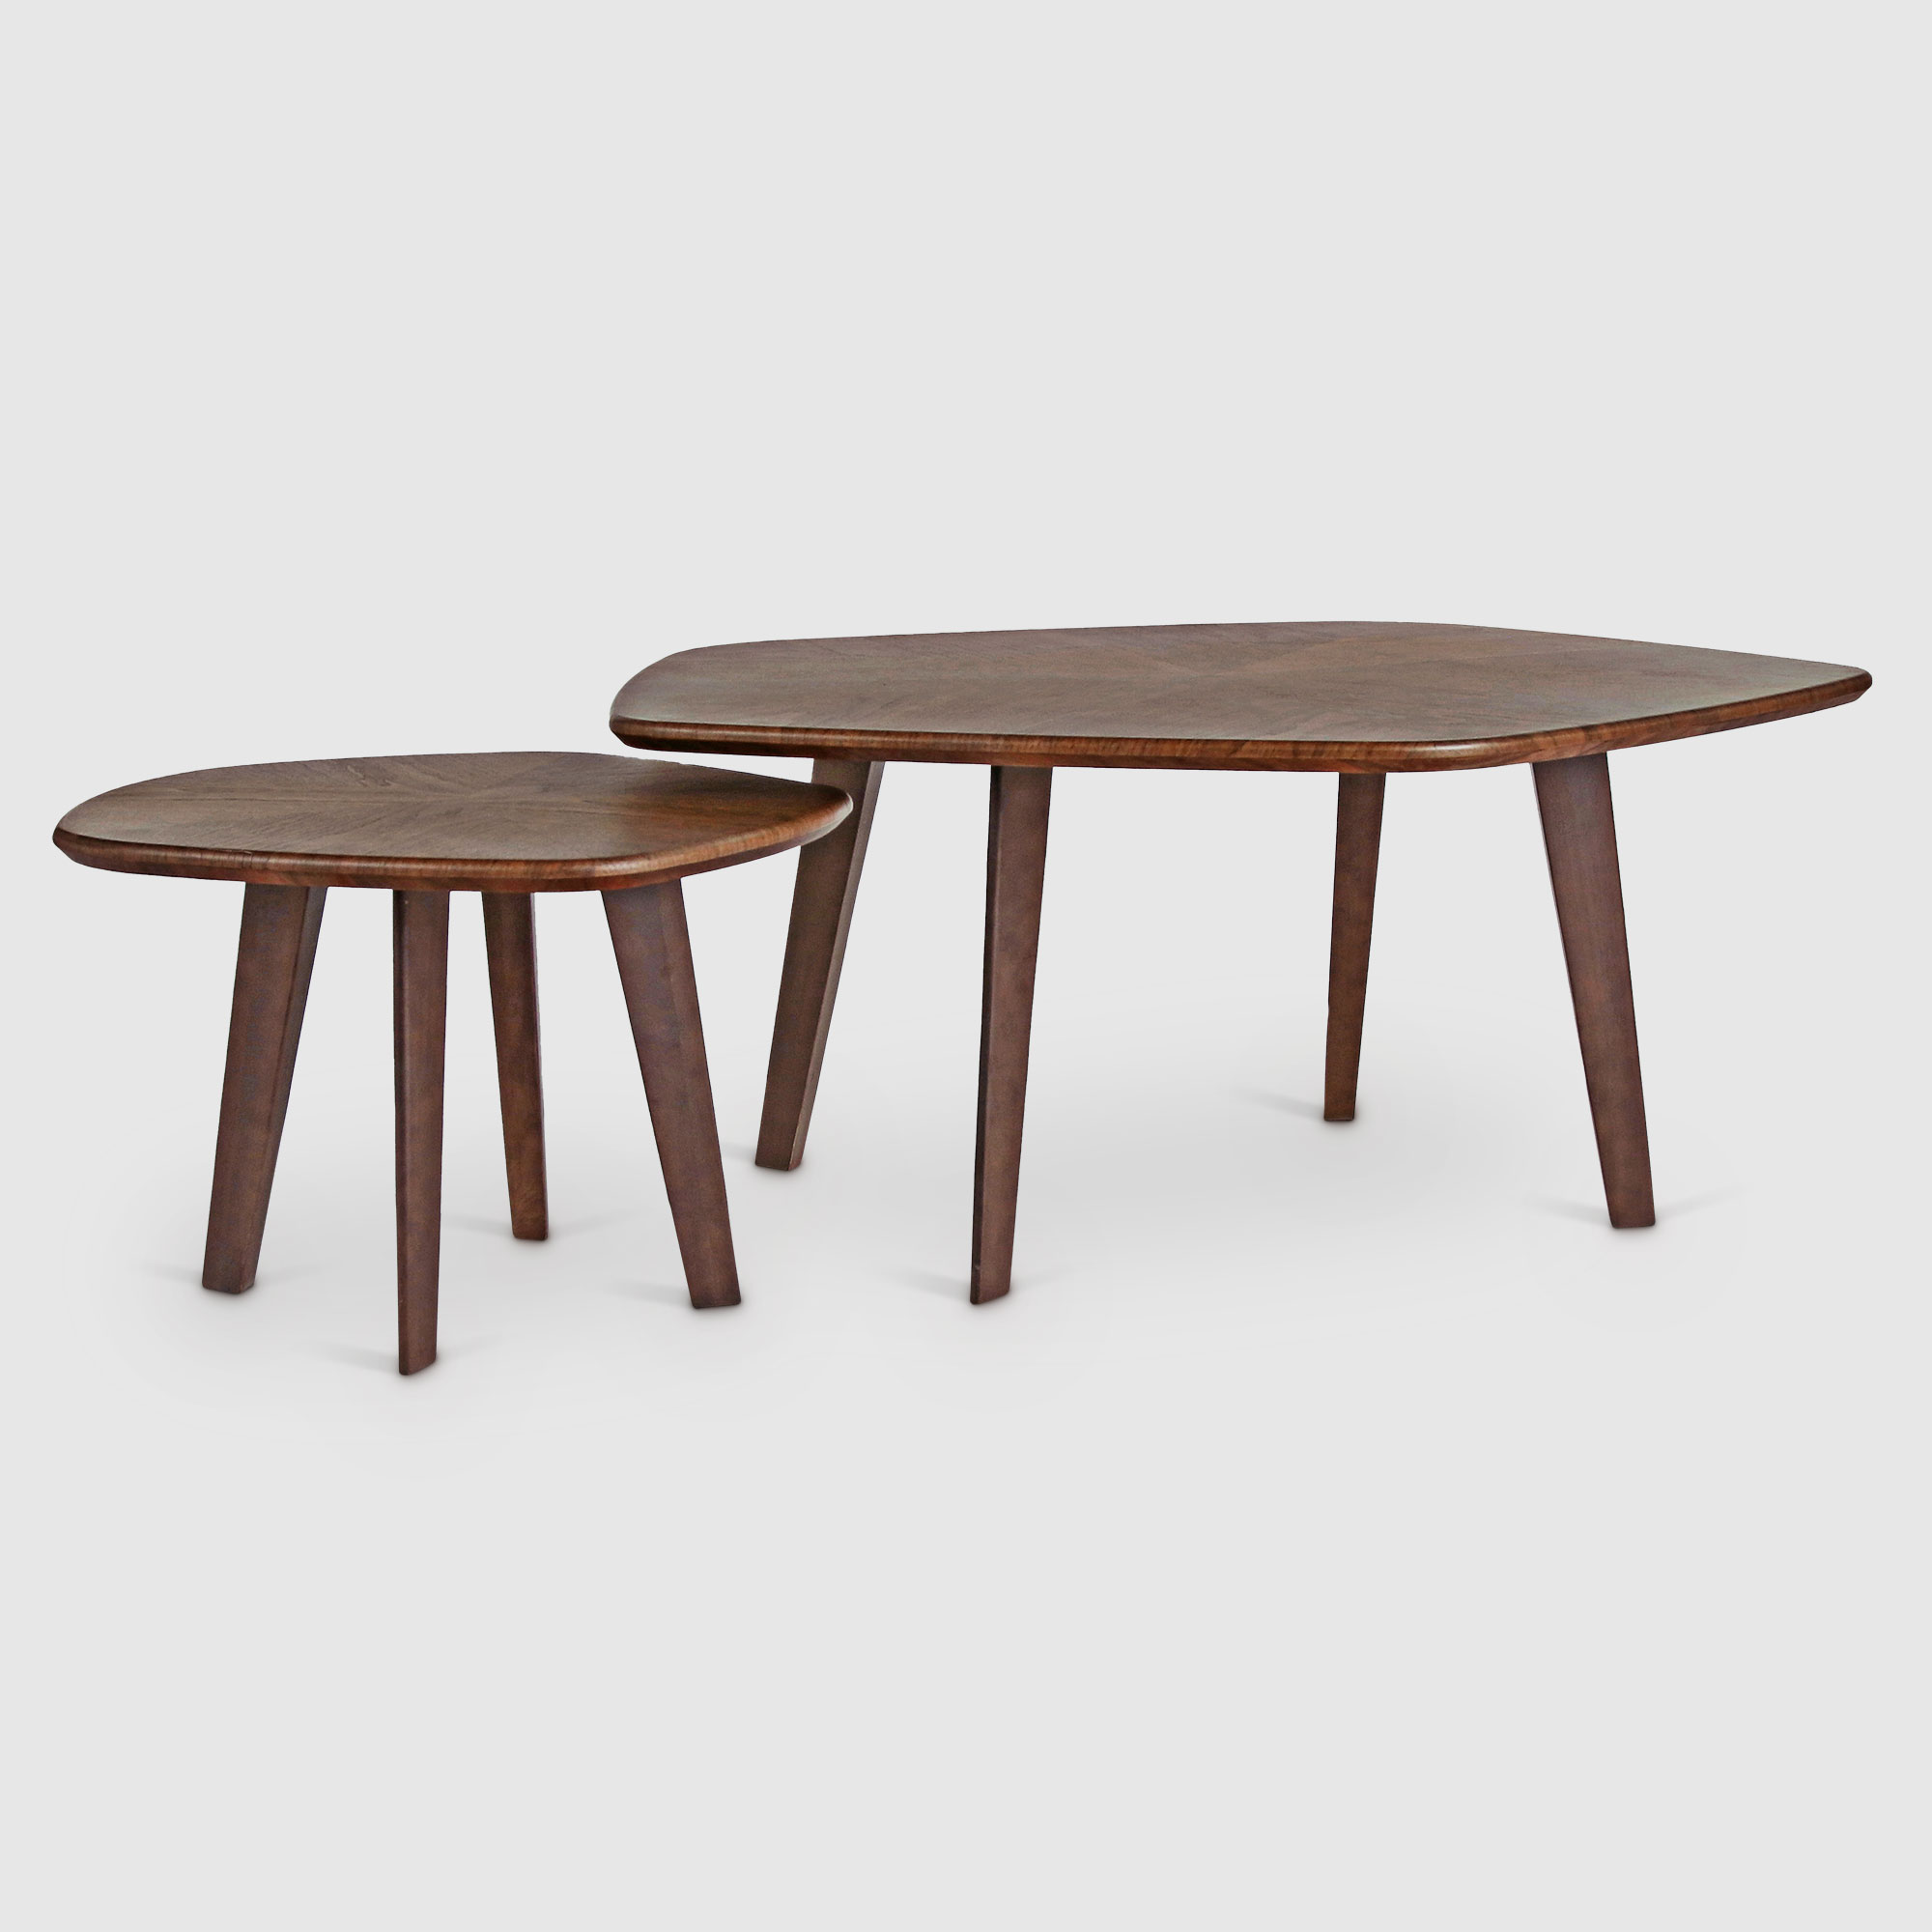 Комплект журнальных столиков City Furniture коричневых из 2 предметов